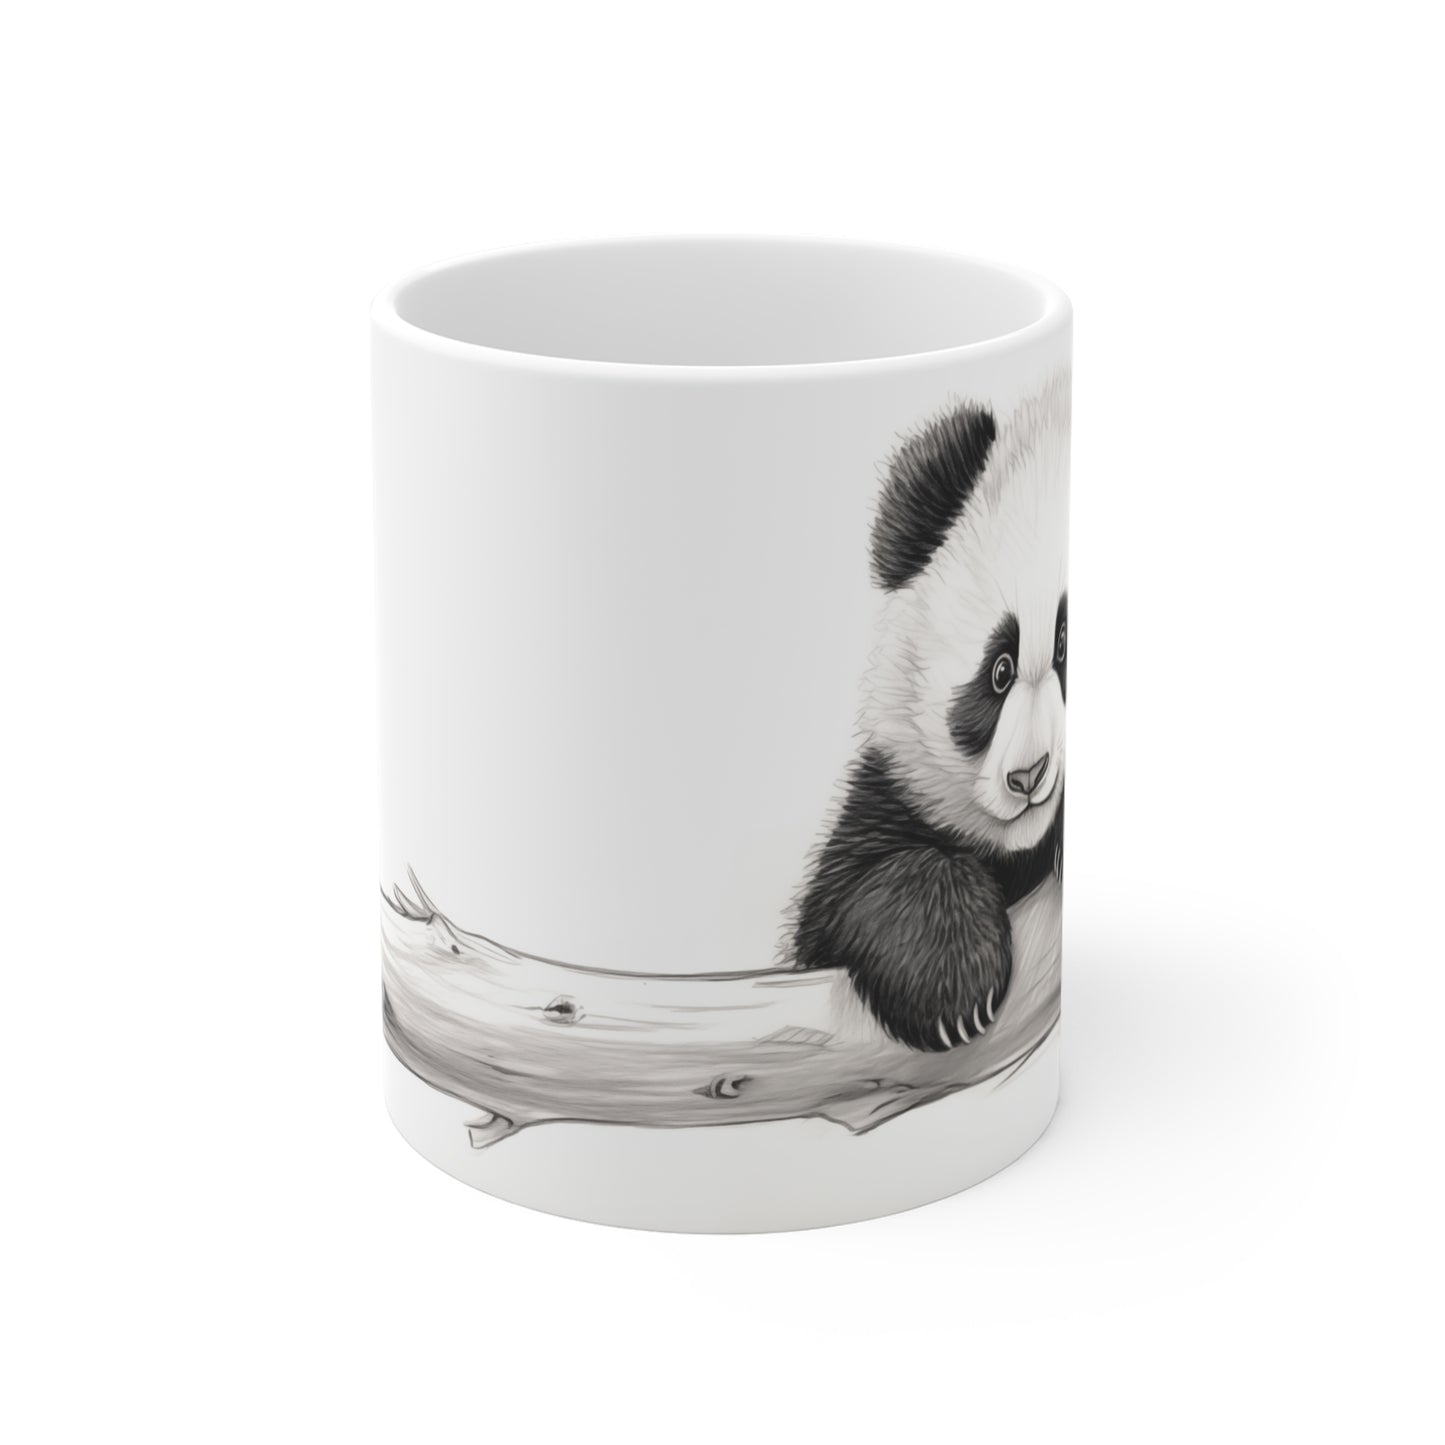 a cute mug